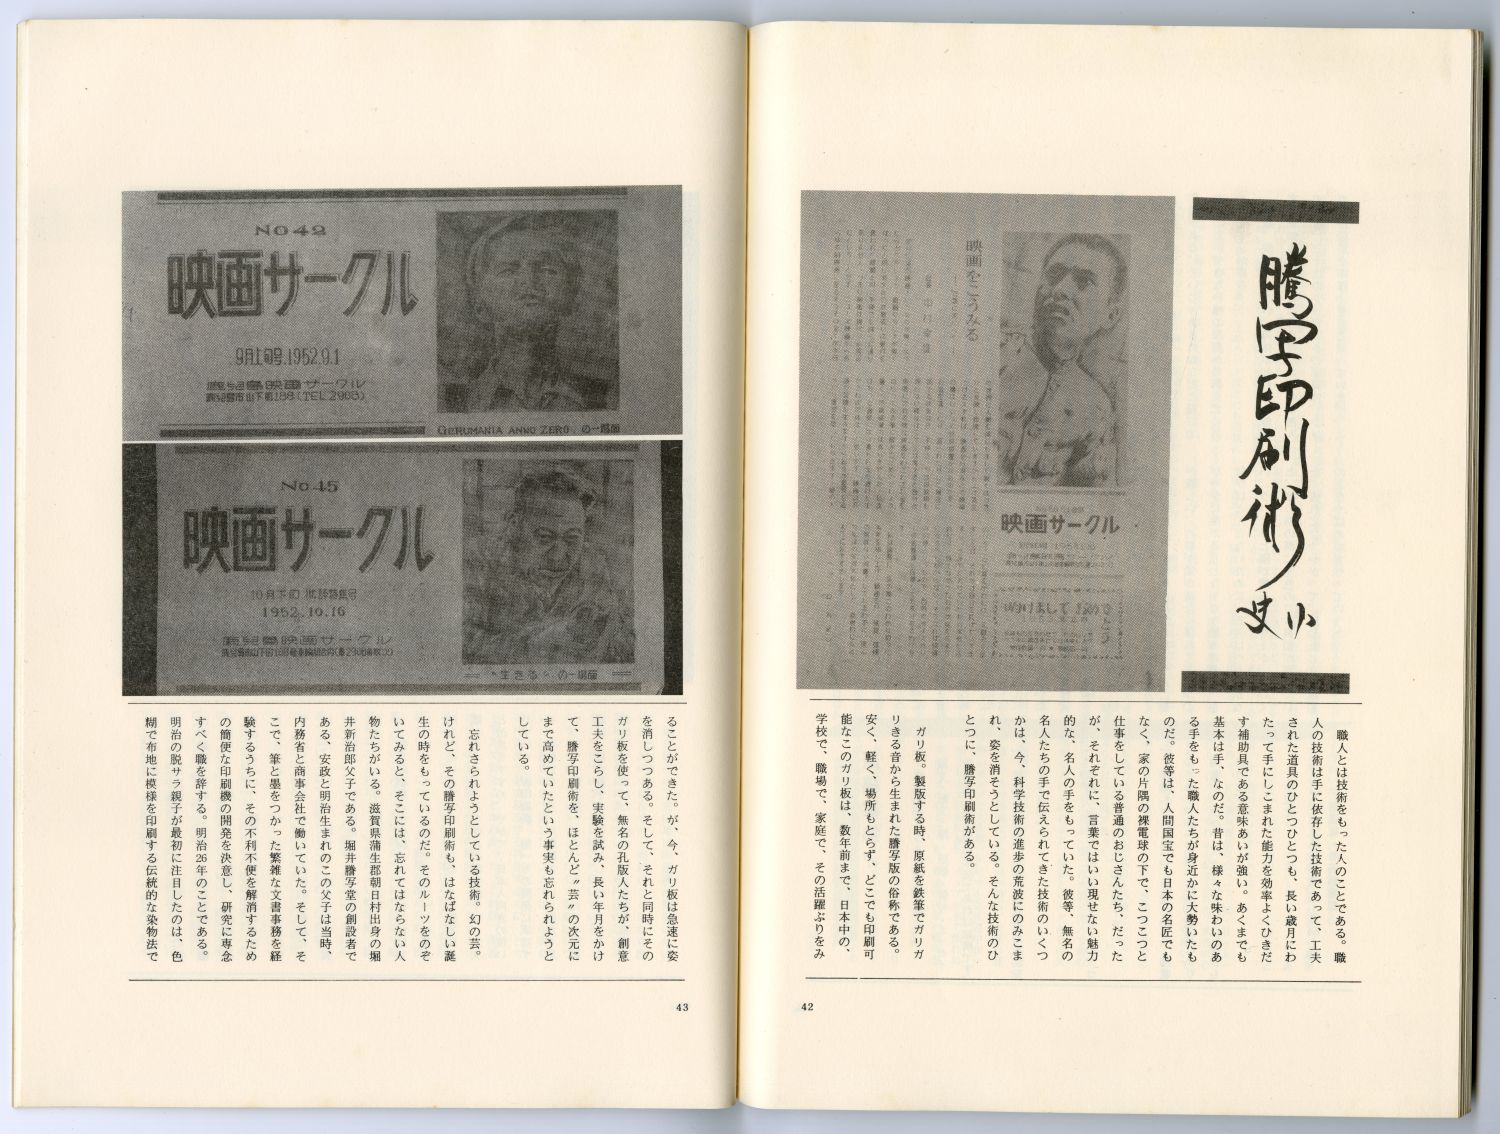 『黙遙』創刊号（1986年10月、黙遙社）「謄写印刷術小史」